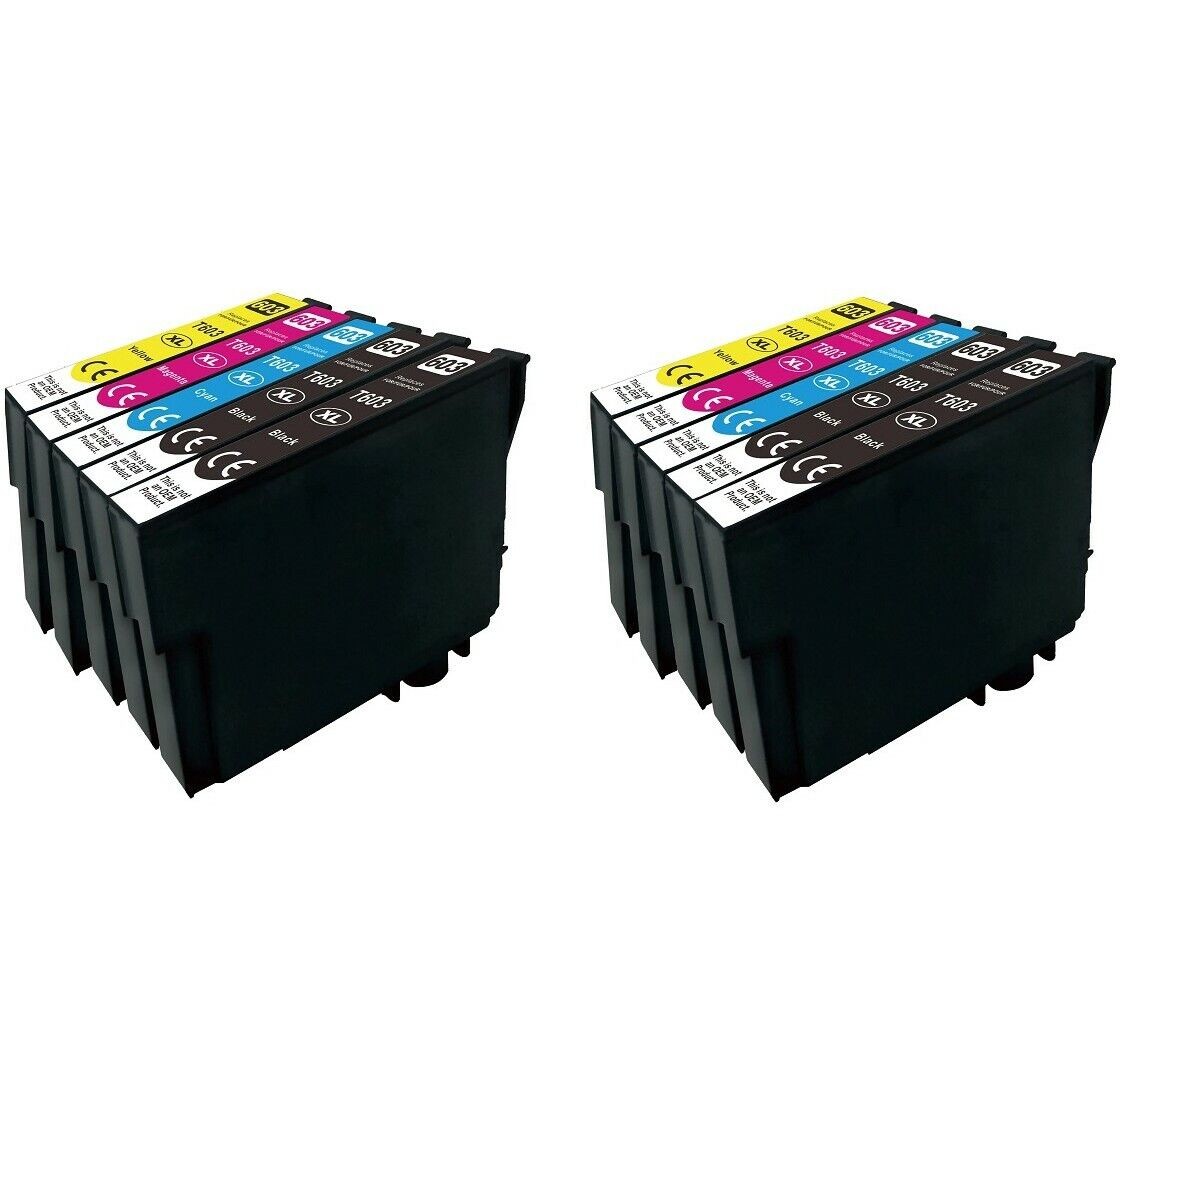 10 Druckerpatronen Set für Epson 603XL XP2100 XP3100 XP4100 WF2810 WF2830 WF2850